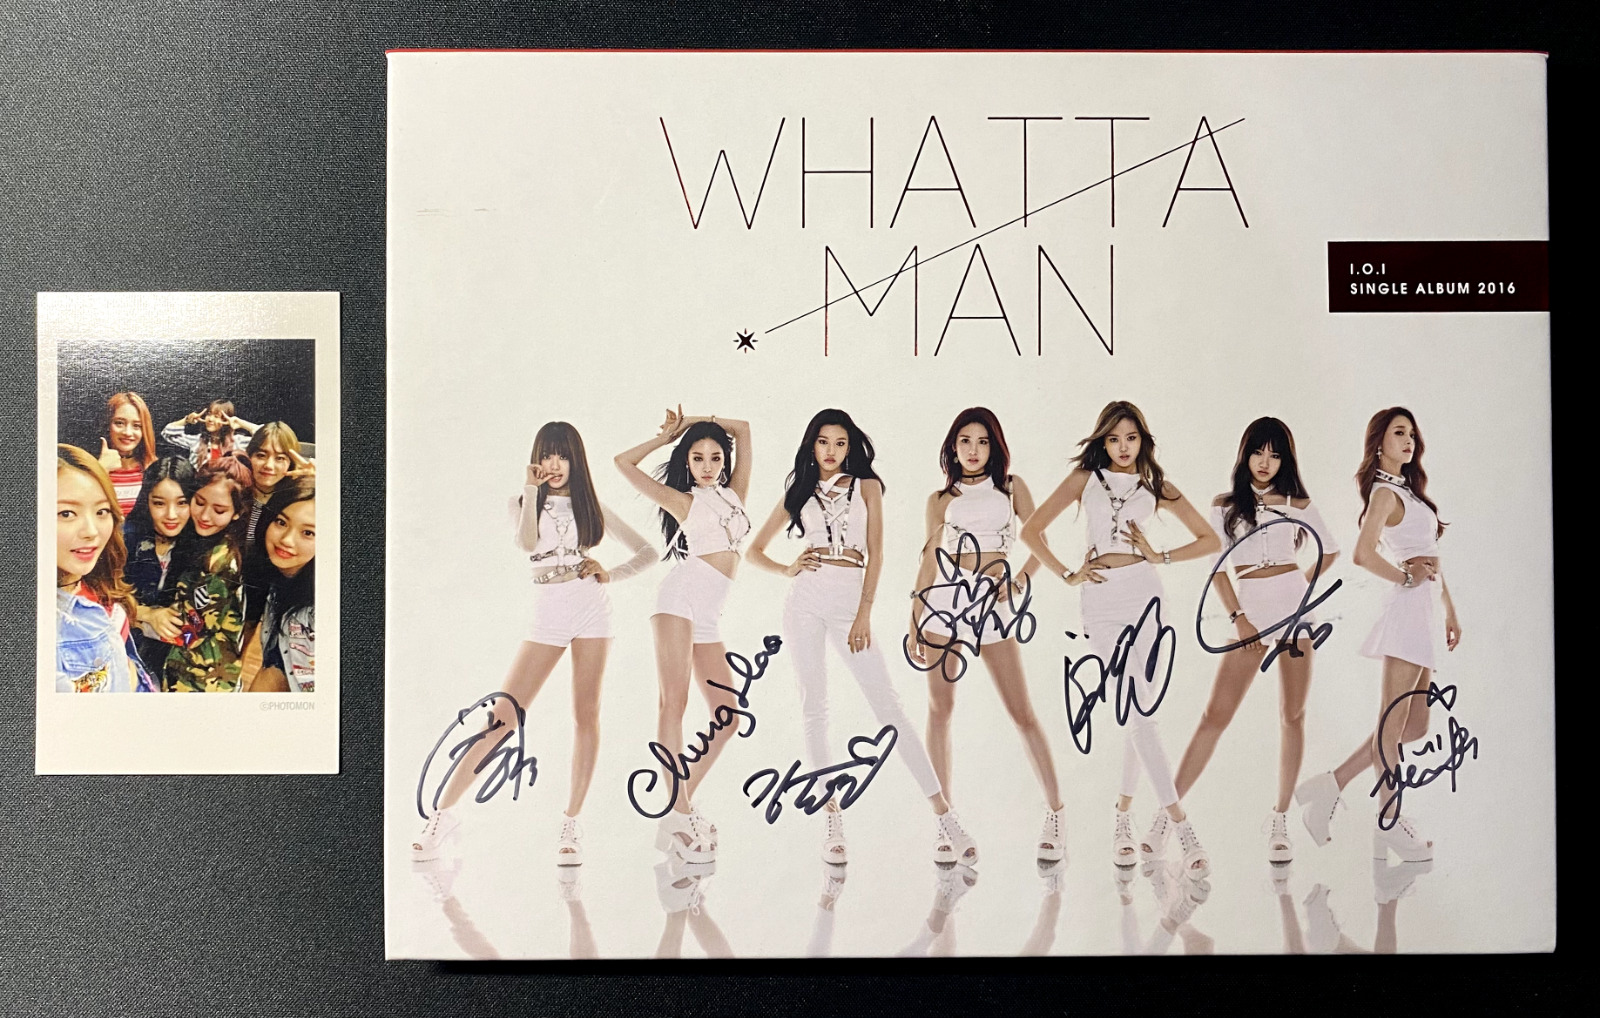 I.O.I. - Whatta Man Single Album Signed Autograph All Subunit Members (1 PC) IOI